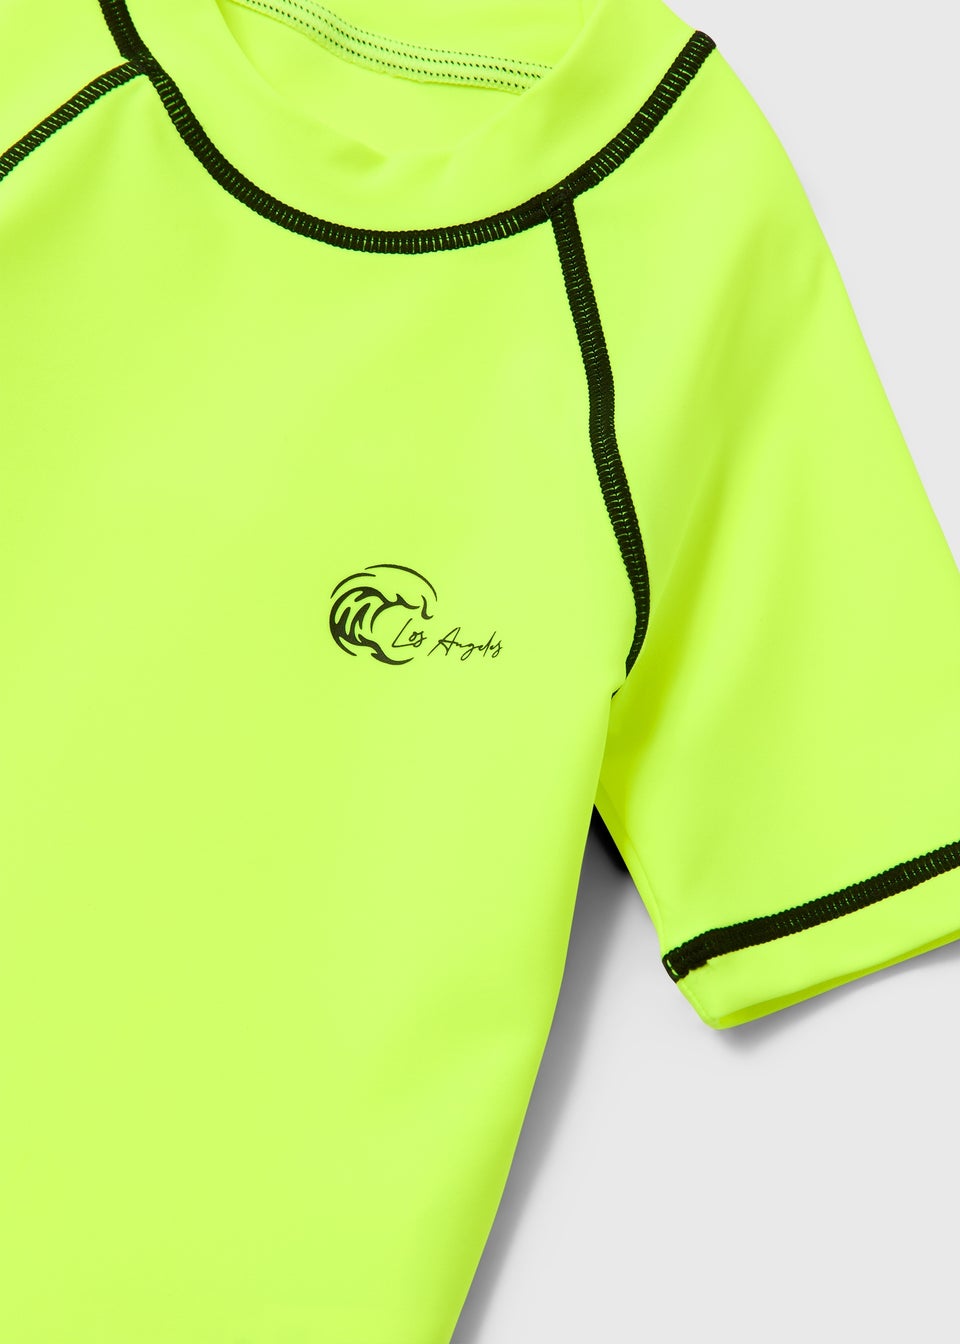 Boys Lime Swim Shirt (1-6yrs)